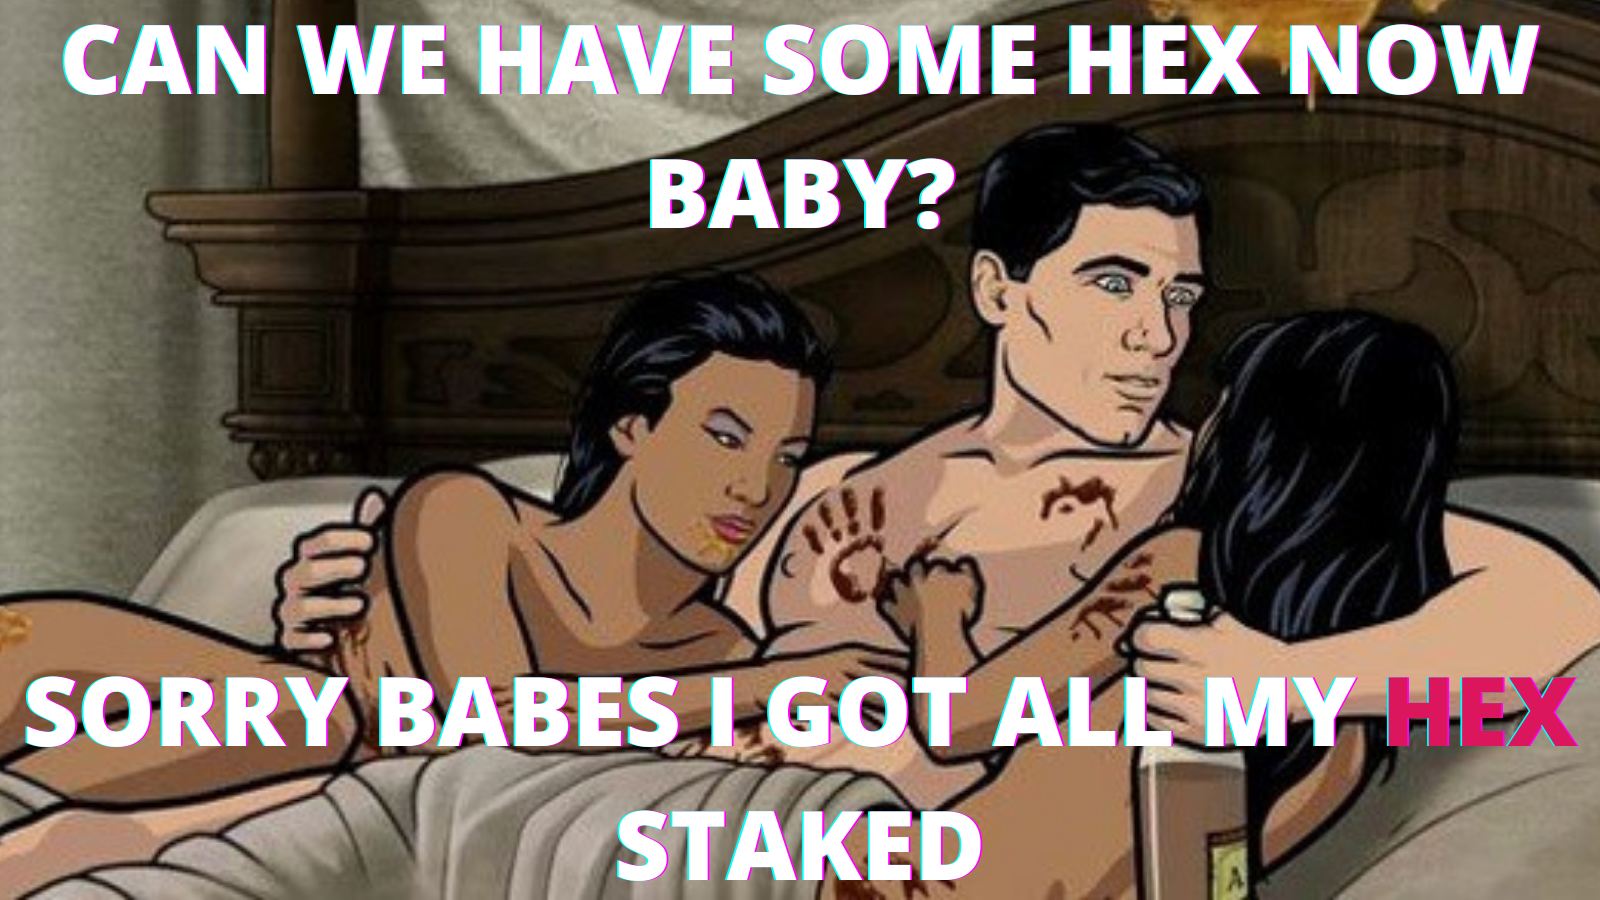 Ich habe mein HEX Staket – #HEX #Memes